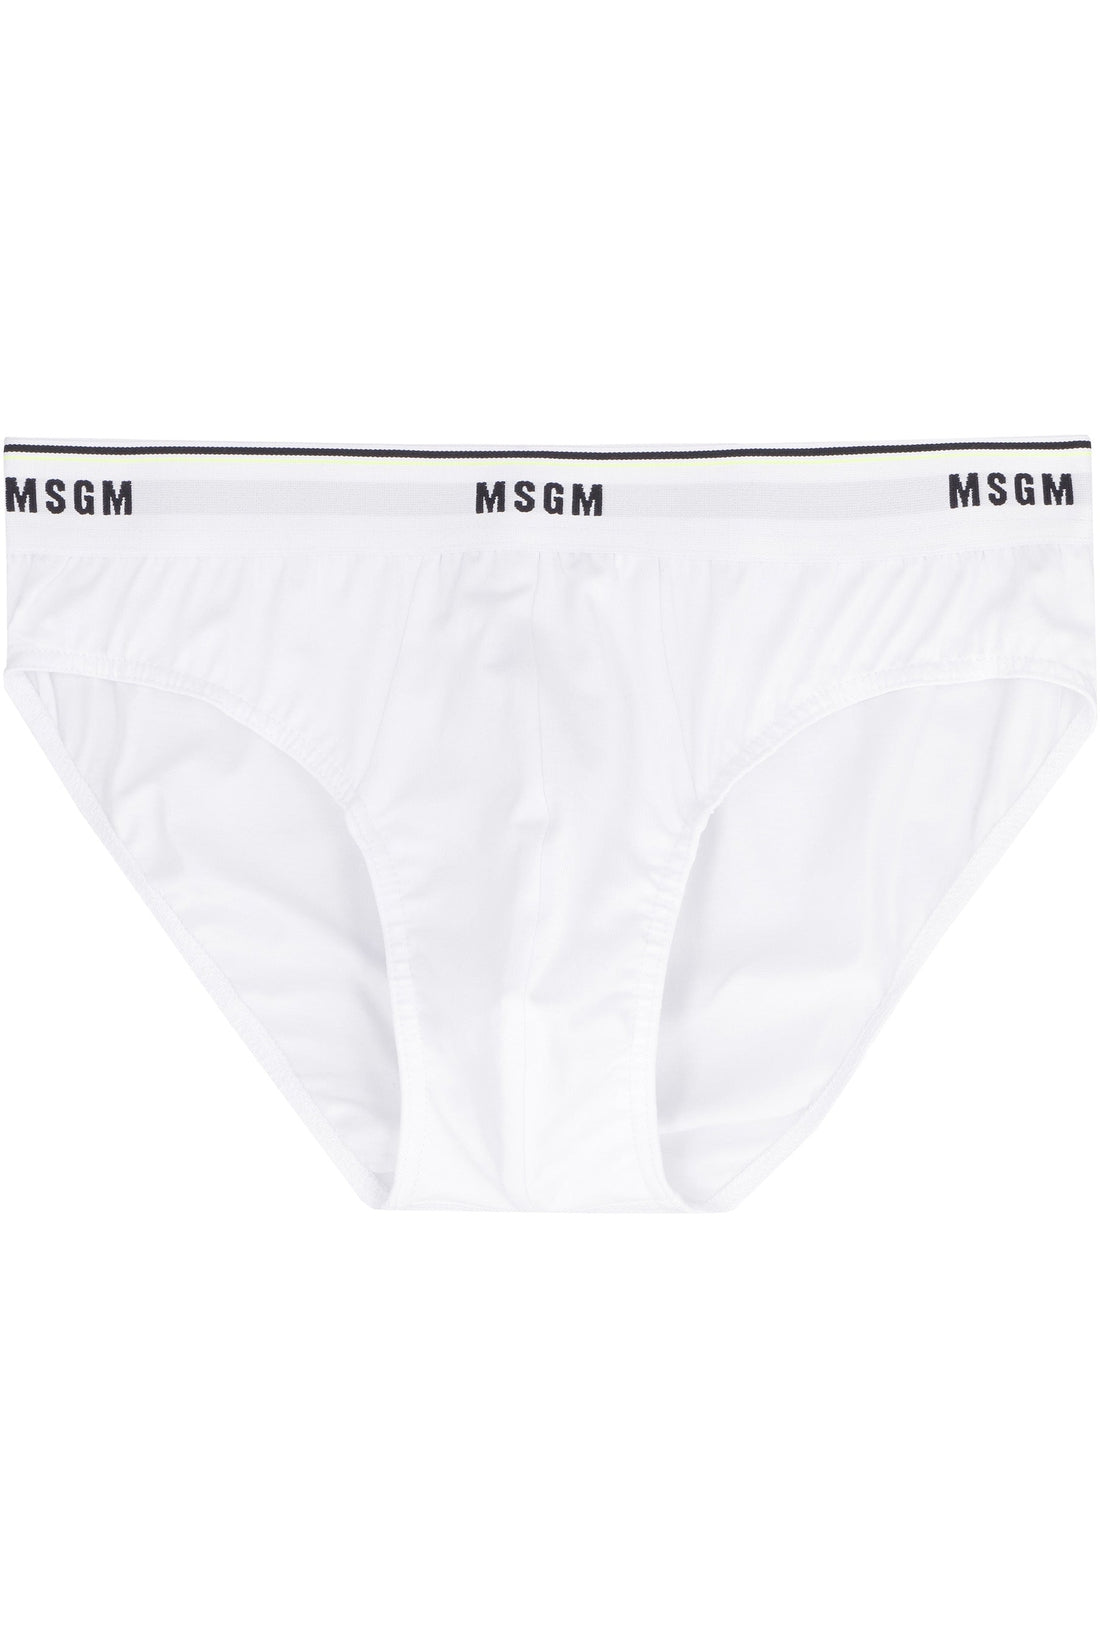 MSGM-OUTLET-SALE-Logoed elastic band cotton briefs-ARCHIVIST